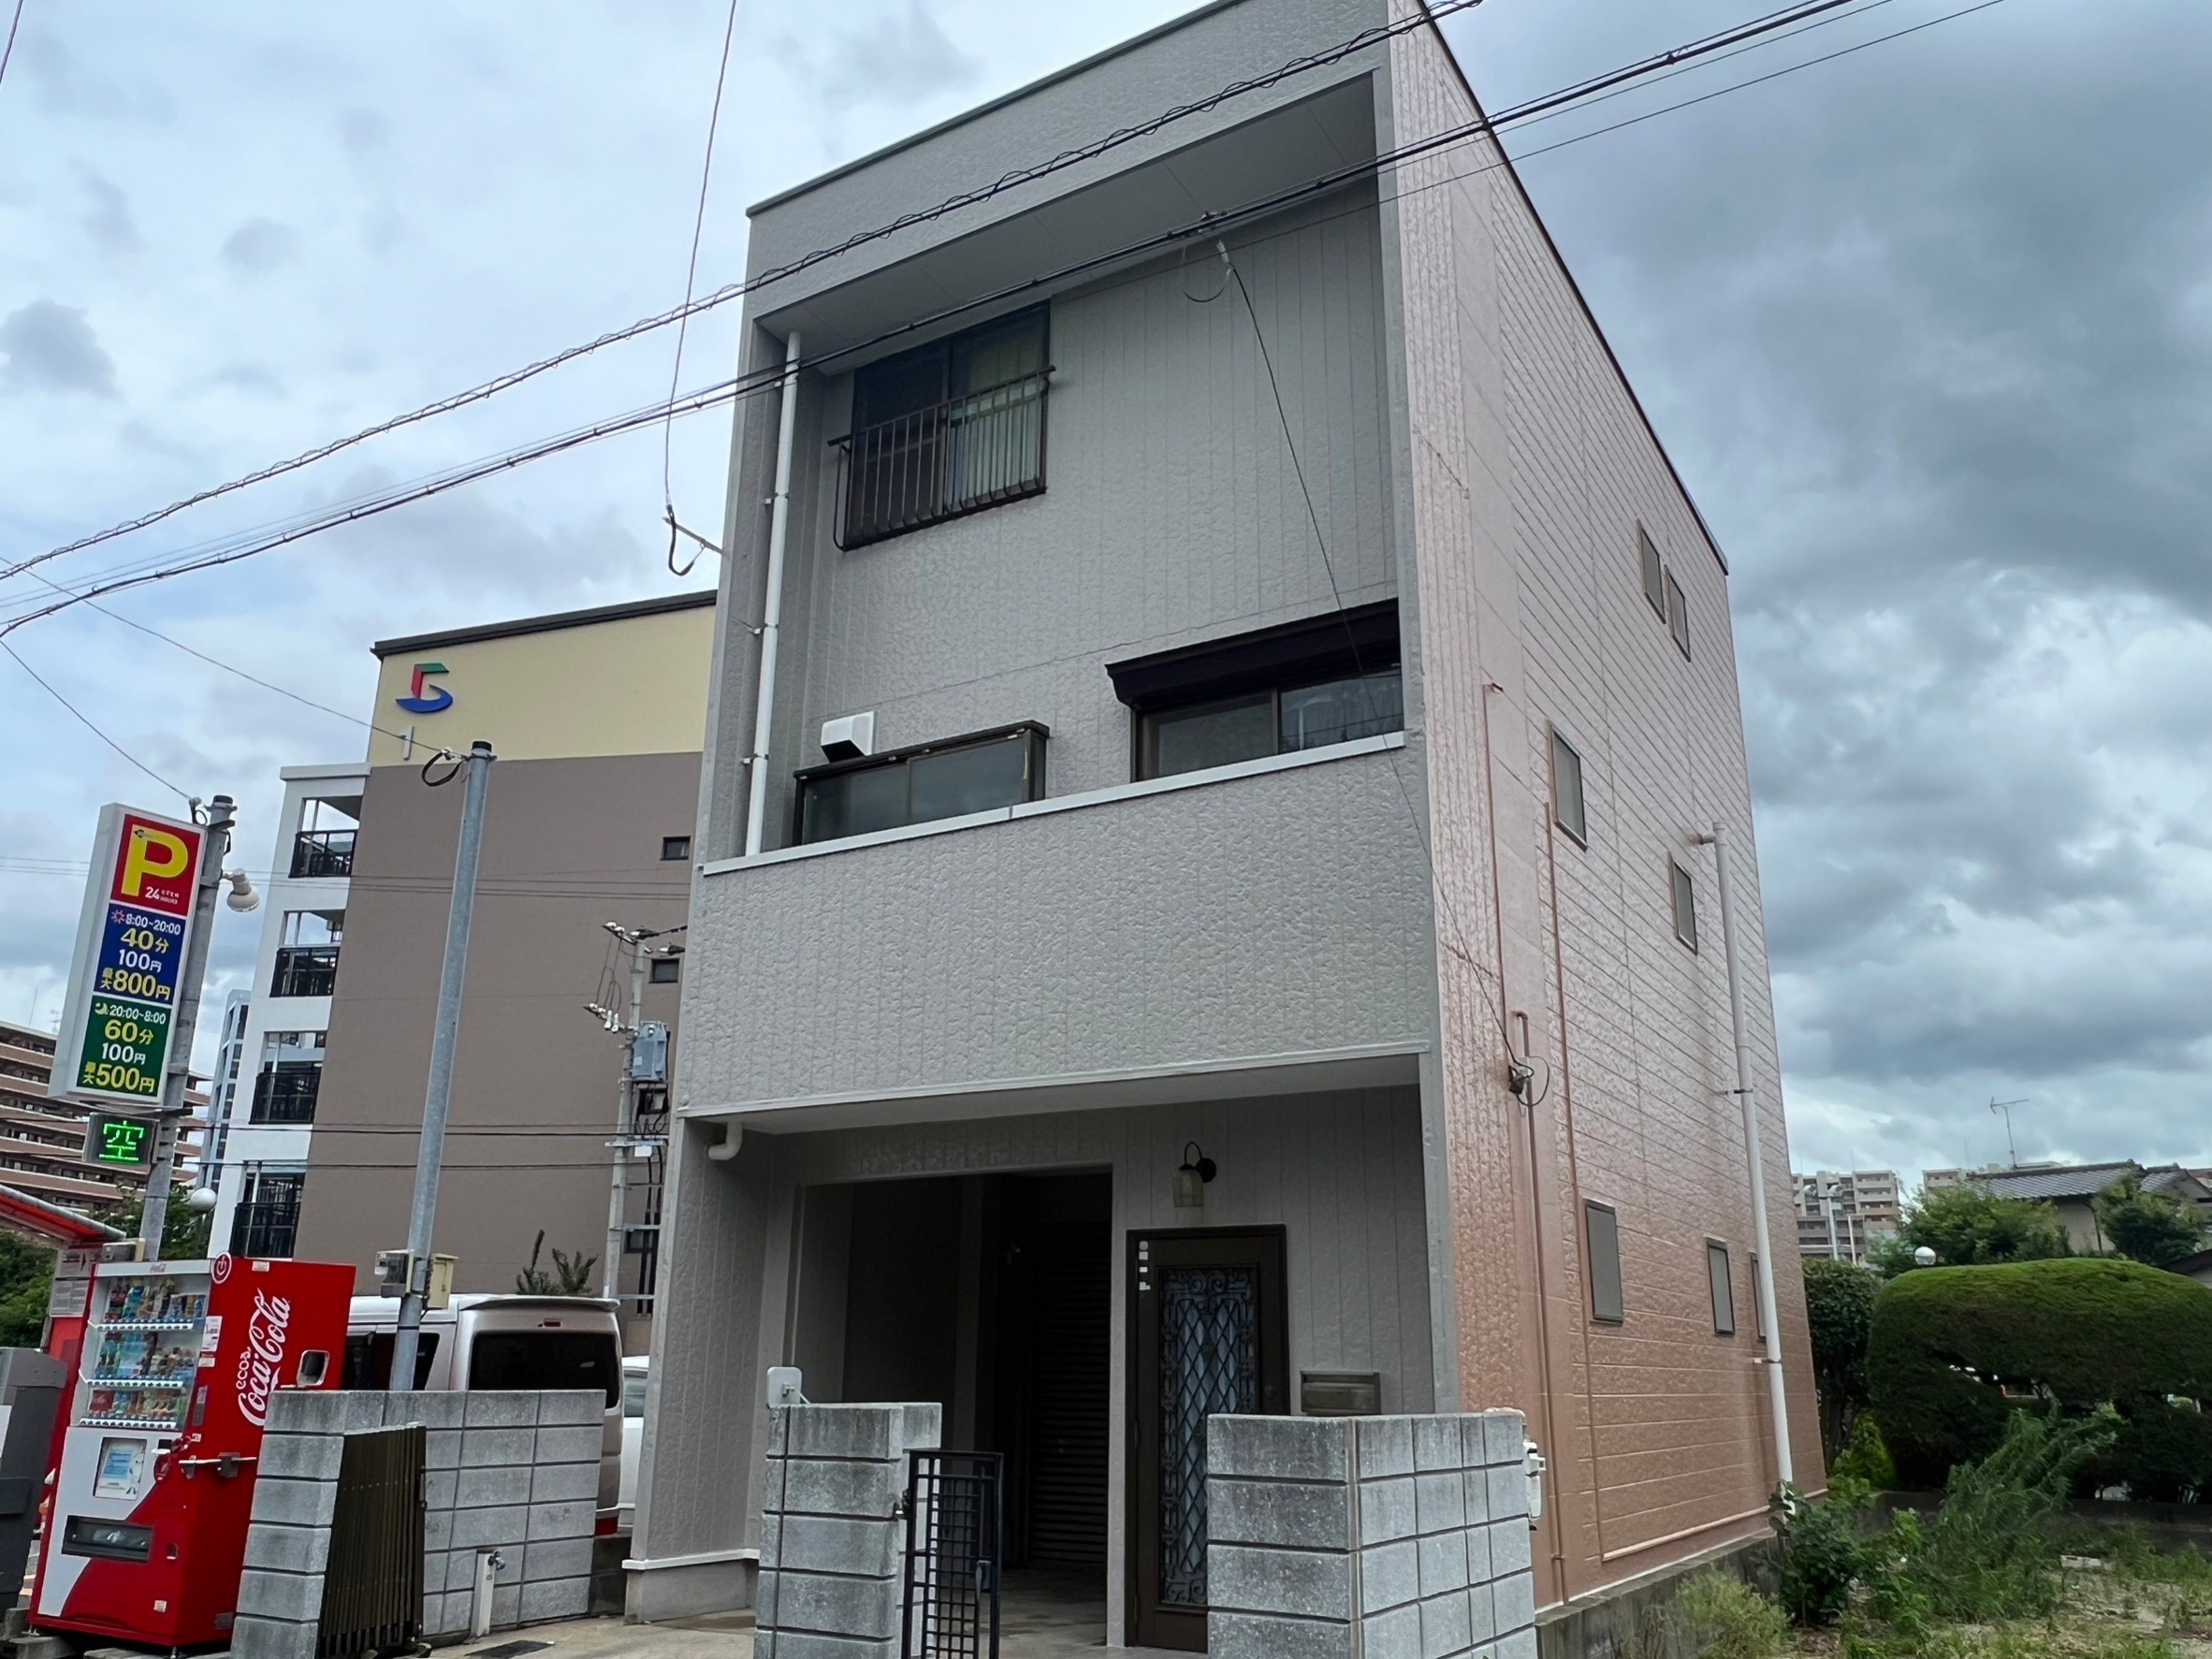 福岡県福岡市東区千早のA様邸でひび割れの補修や塗膜の剥がれを整えつつ高耐久塗料にて外壁と屋根の塗装を行いました。7/13完成です。【ホームページより】